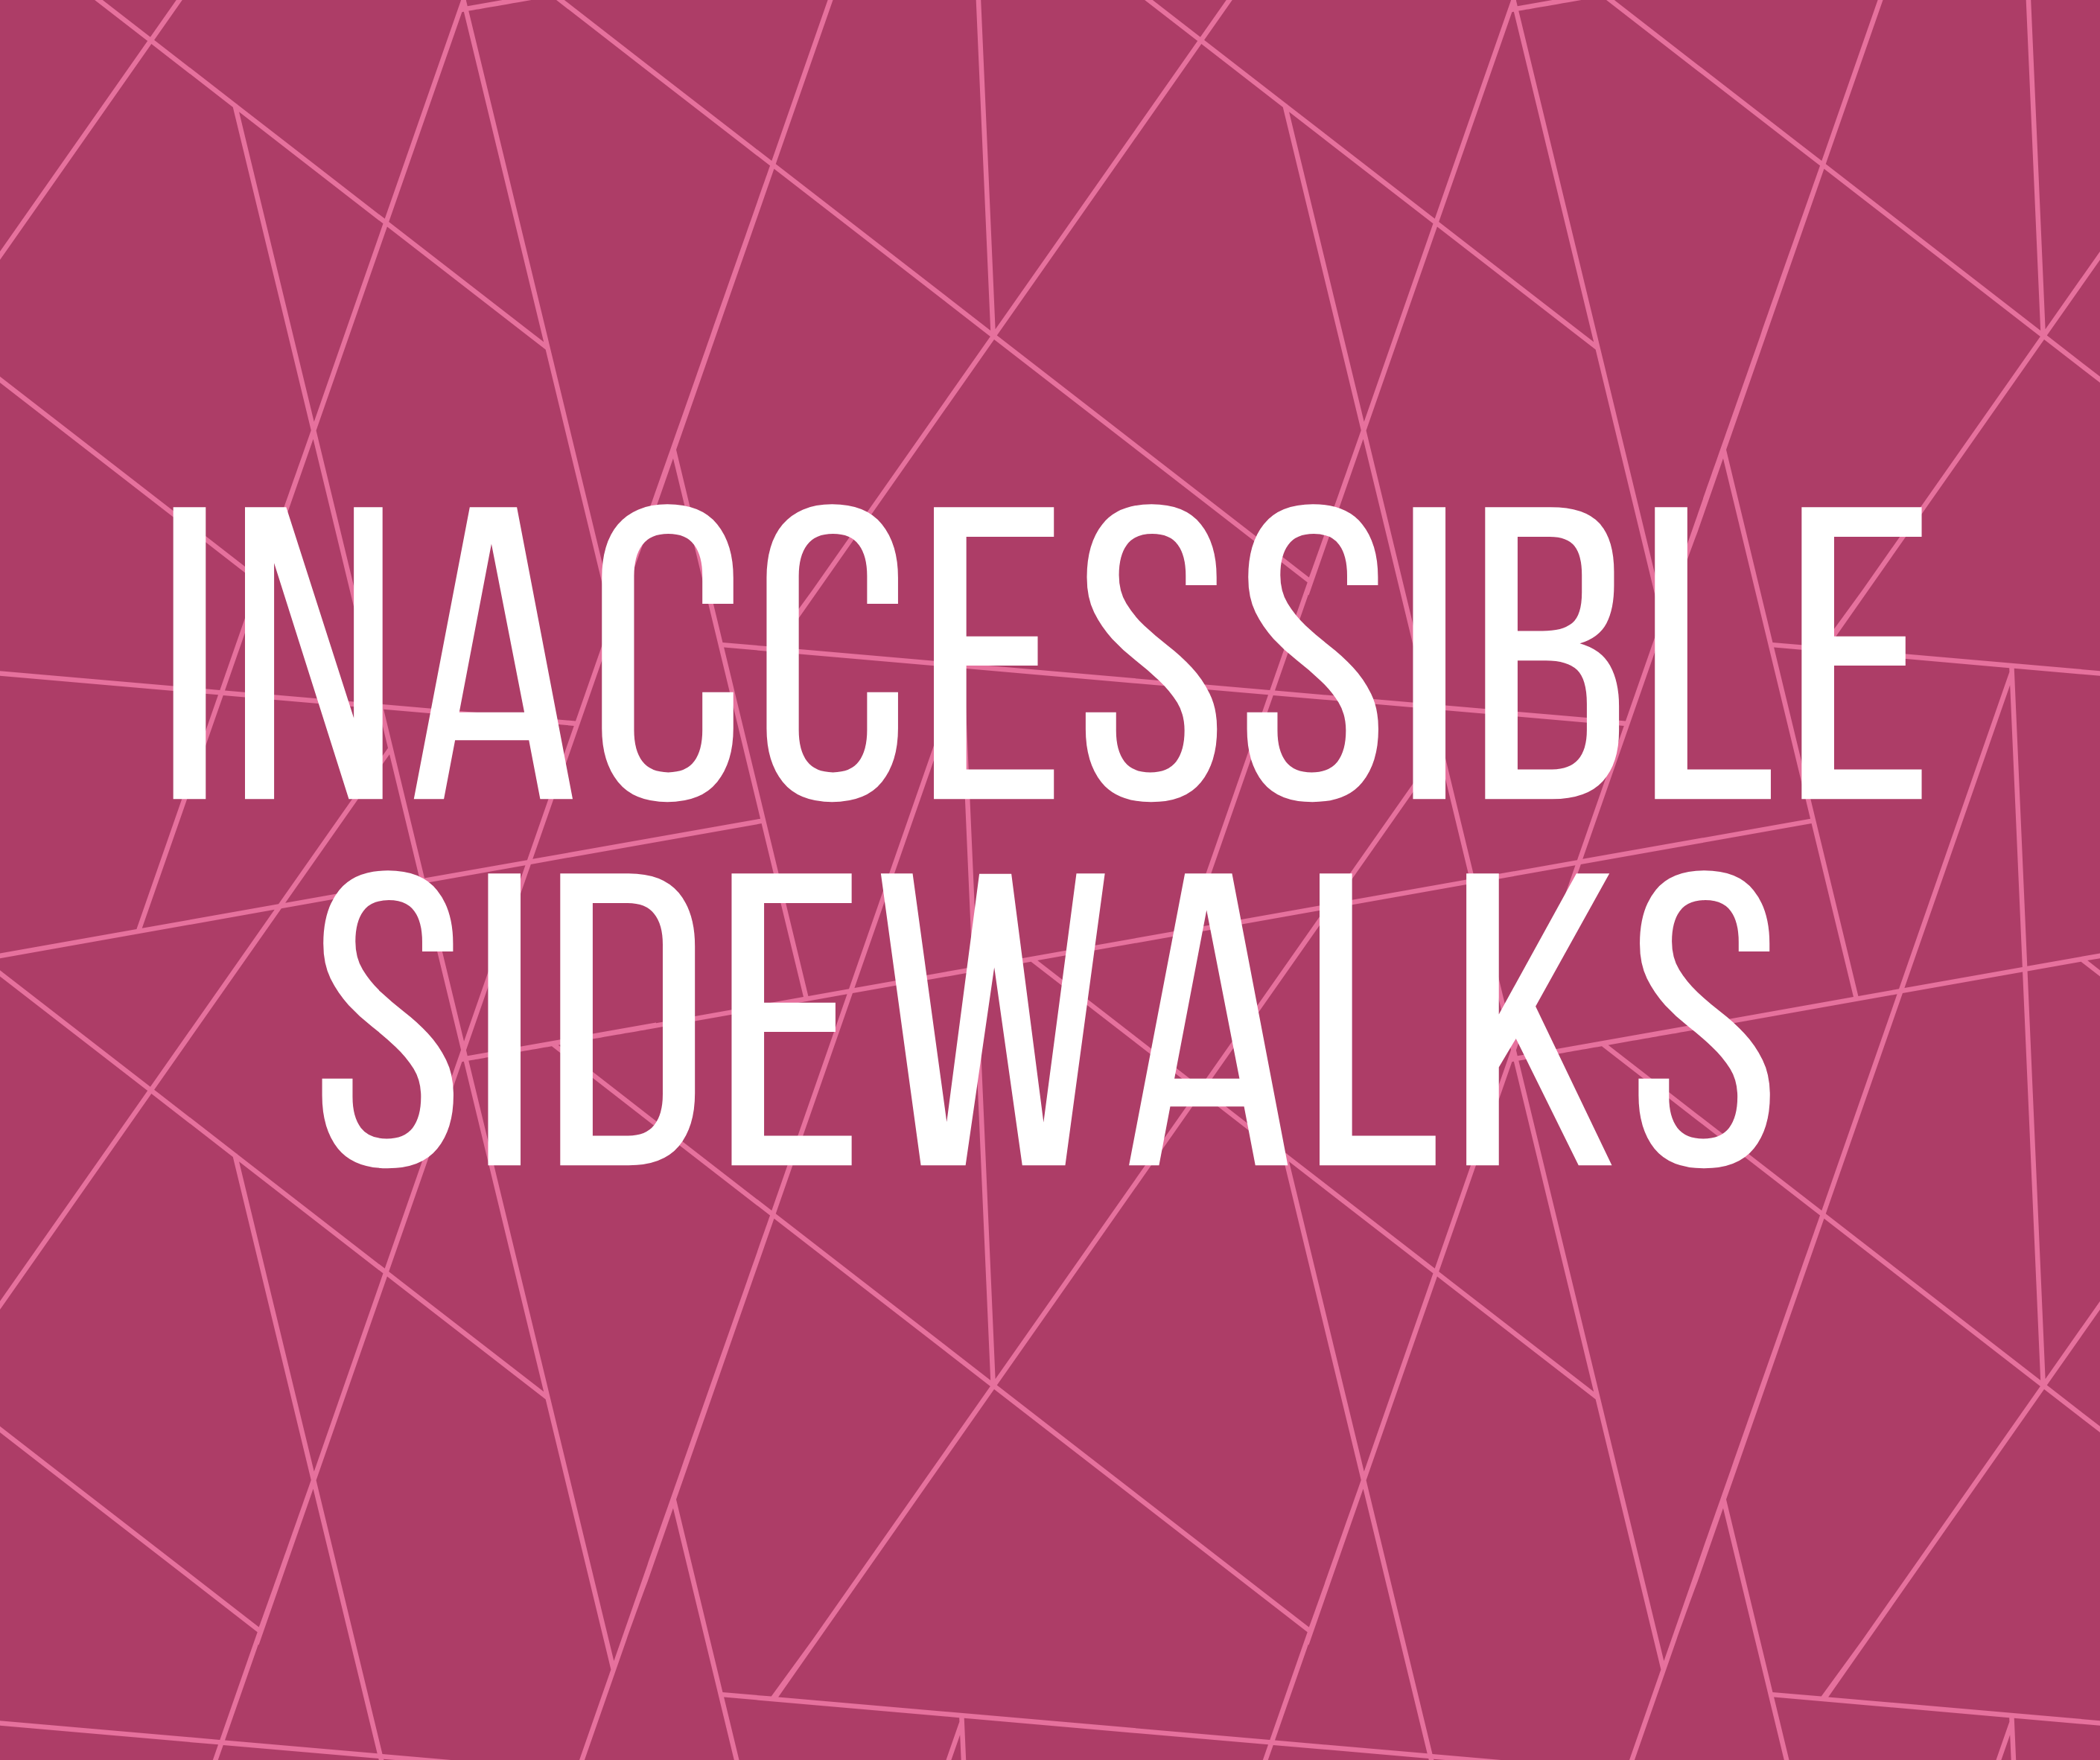 Inaccessible Sidewalks